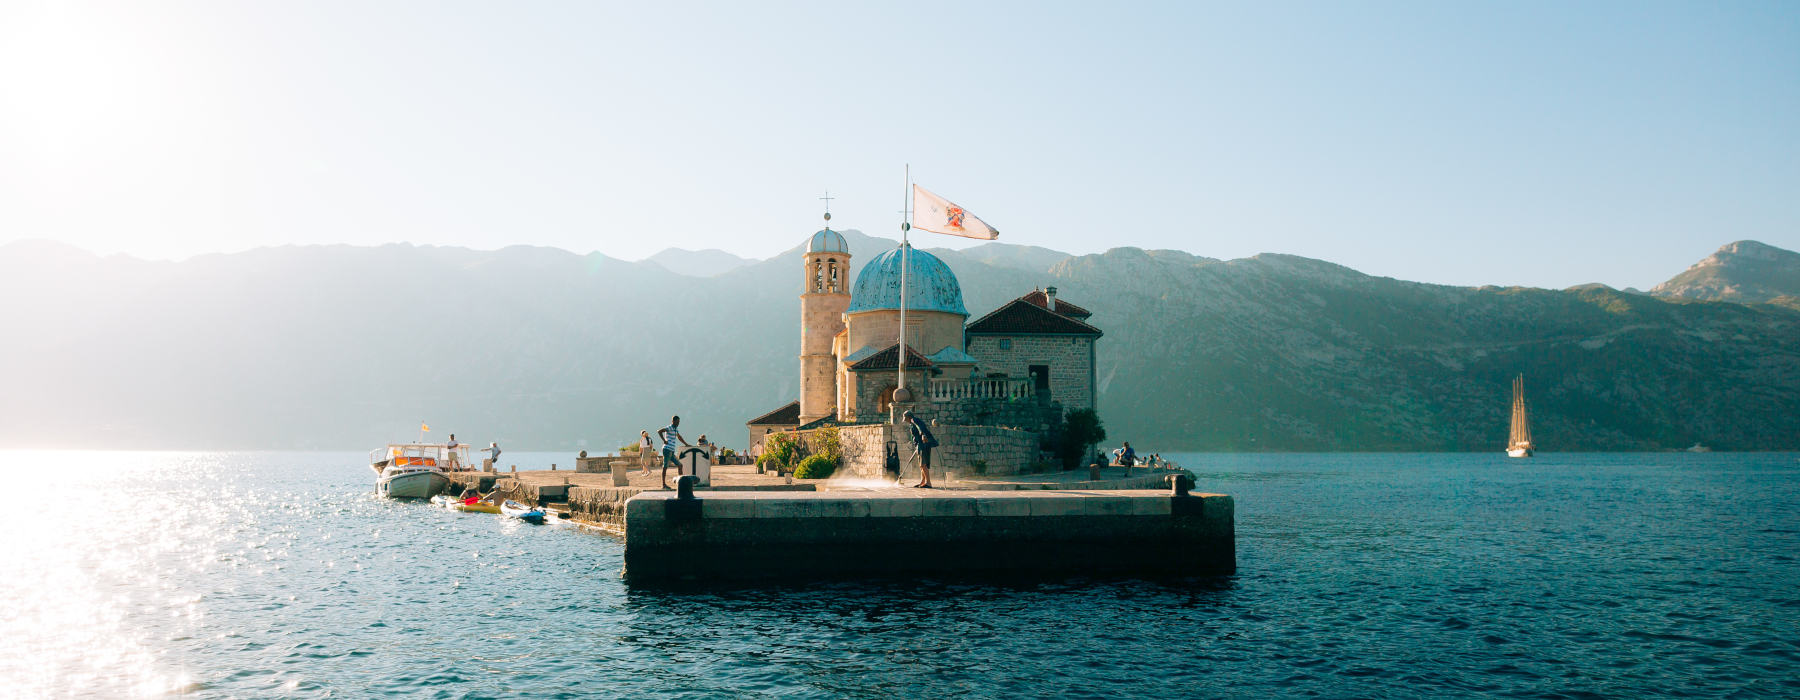 All our Montenegro<br class="hidden-md hidden-lg" /> Undertourism Holidays